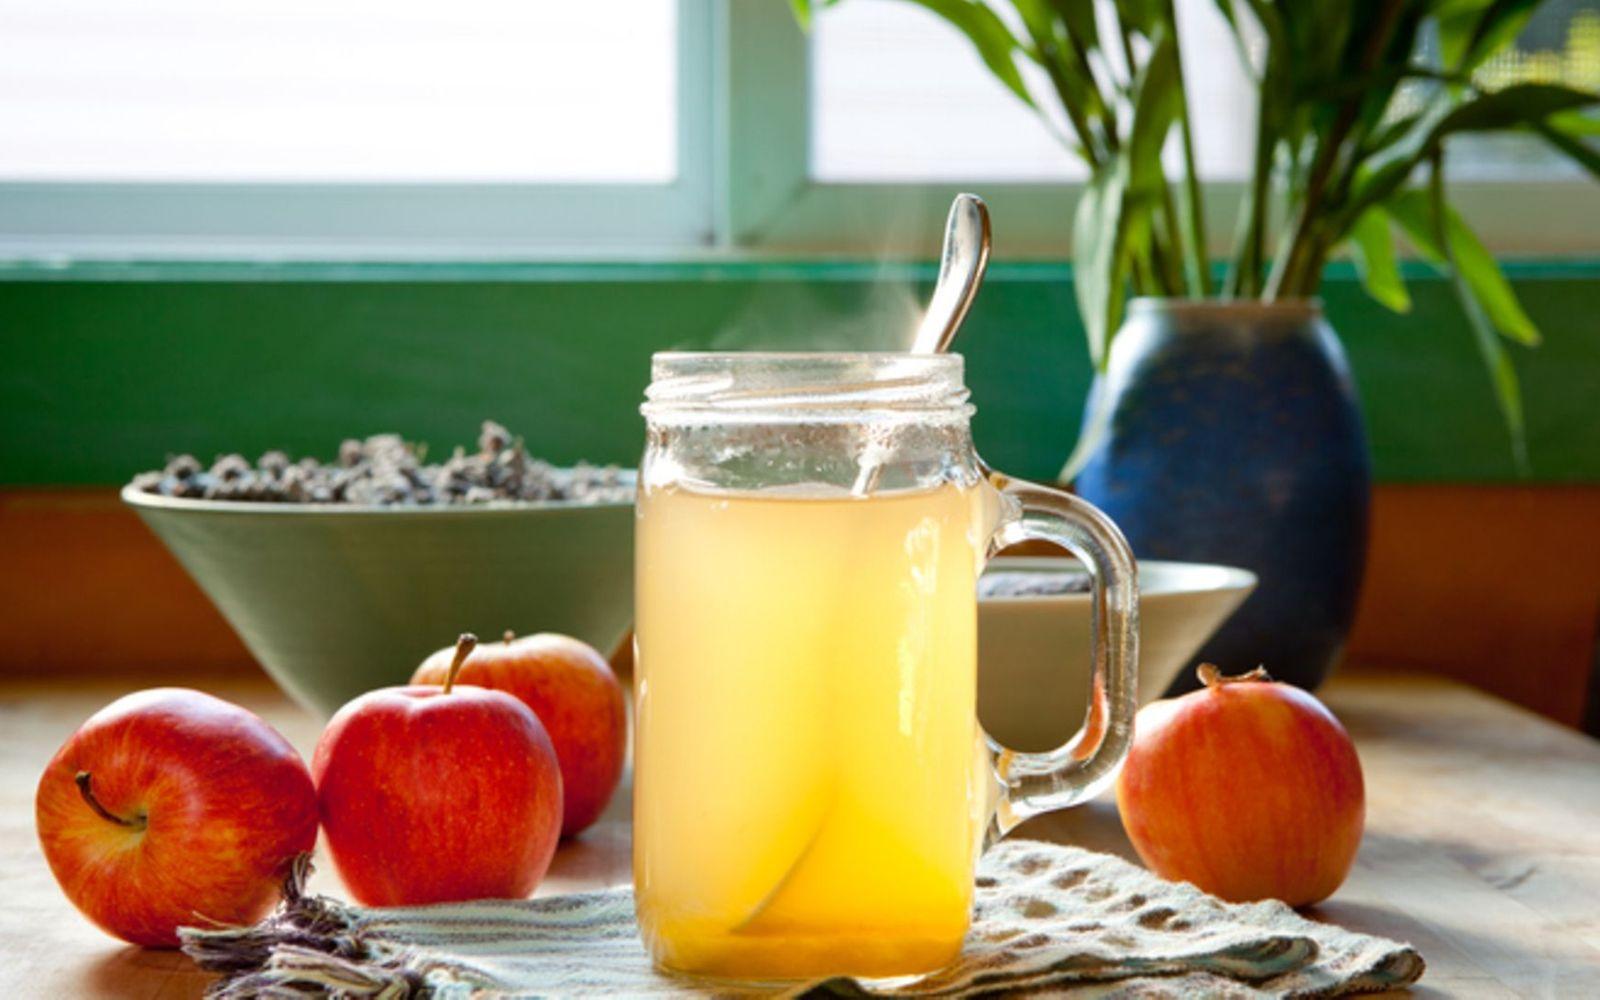 Apfelessig: Auf einem Tisch steht ein Glas Apfelessig. Daneben liegen einige Äpfel.